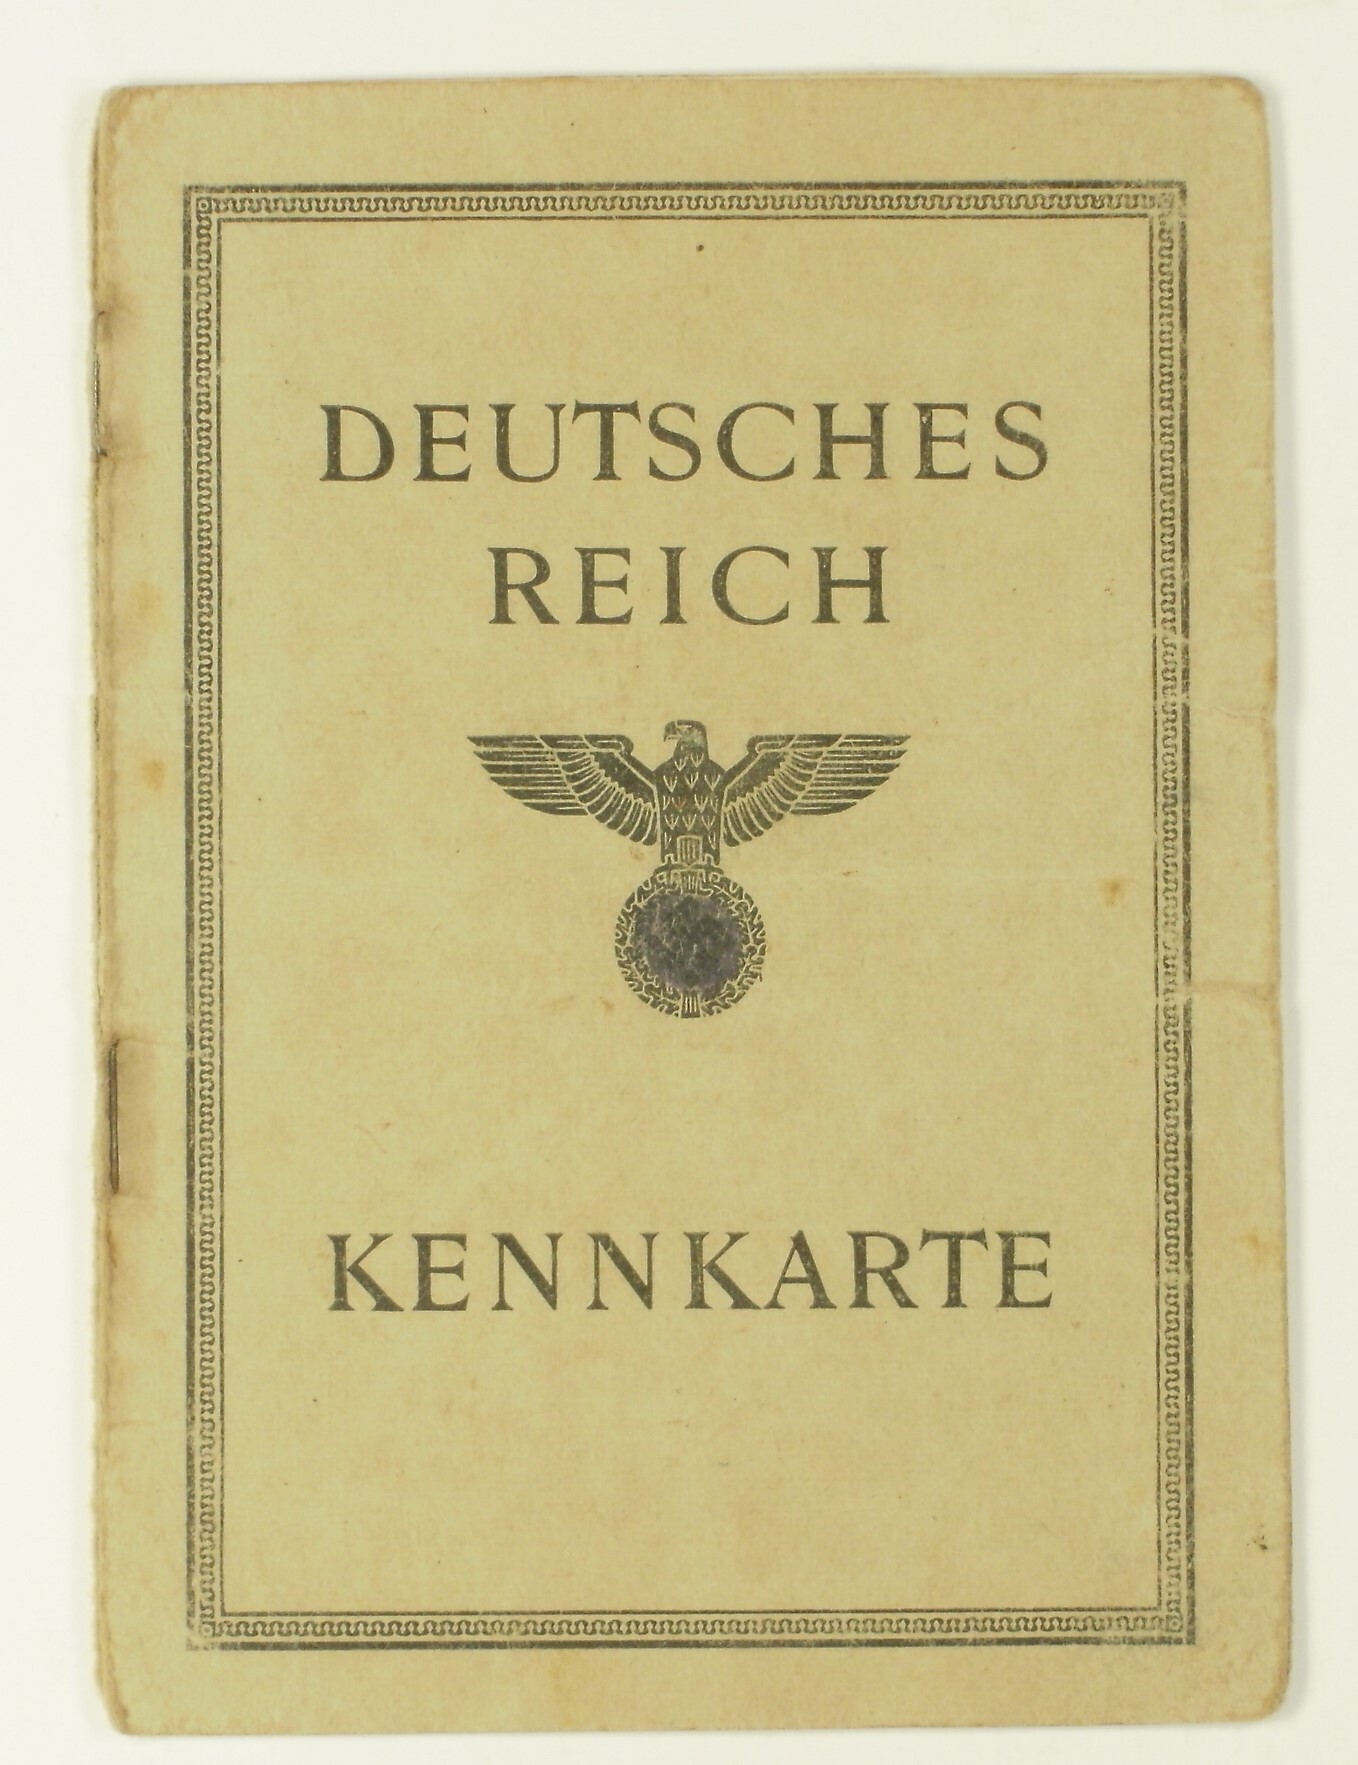 Kennkarte Deutsches Reich (1945) (Volkskunde- und Freilichtmuseum Roscheider Hof CC0)